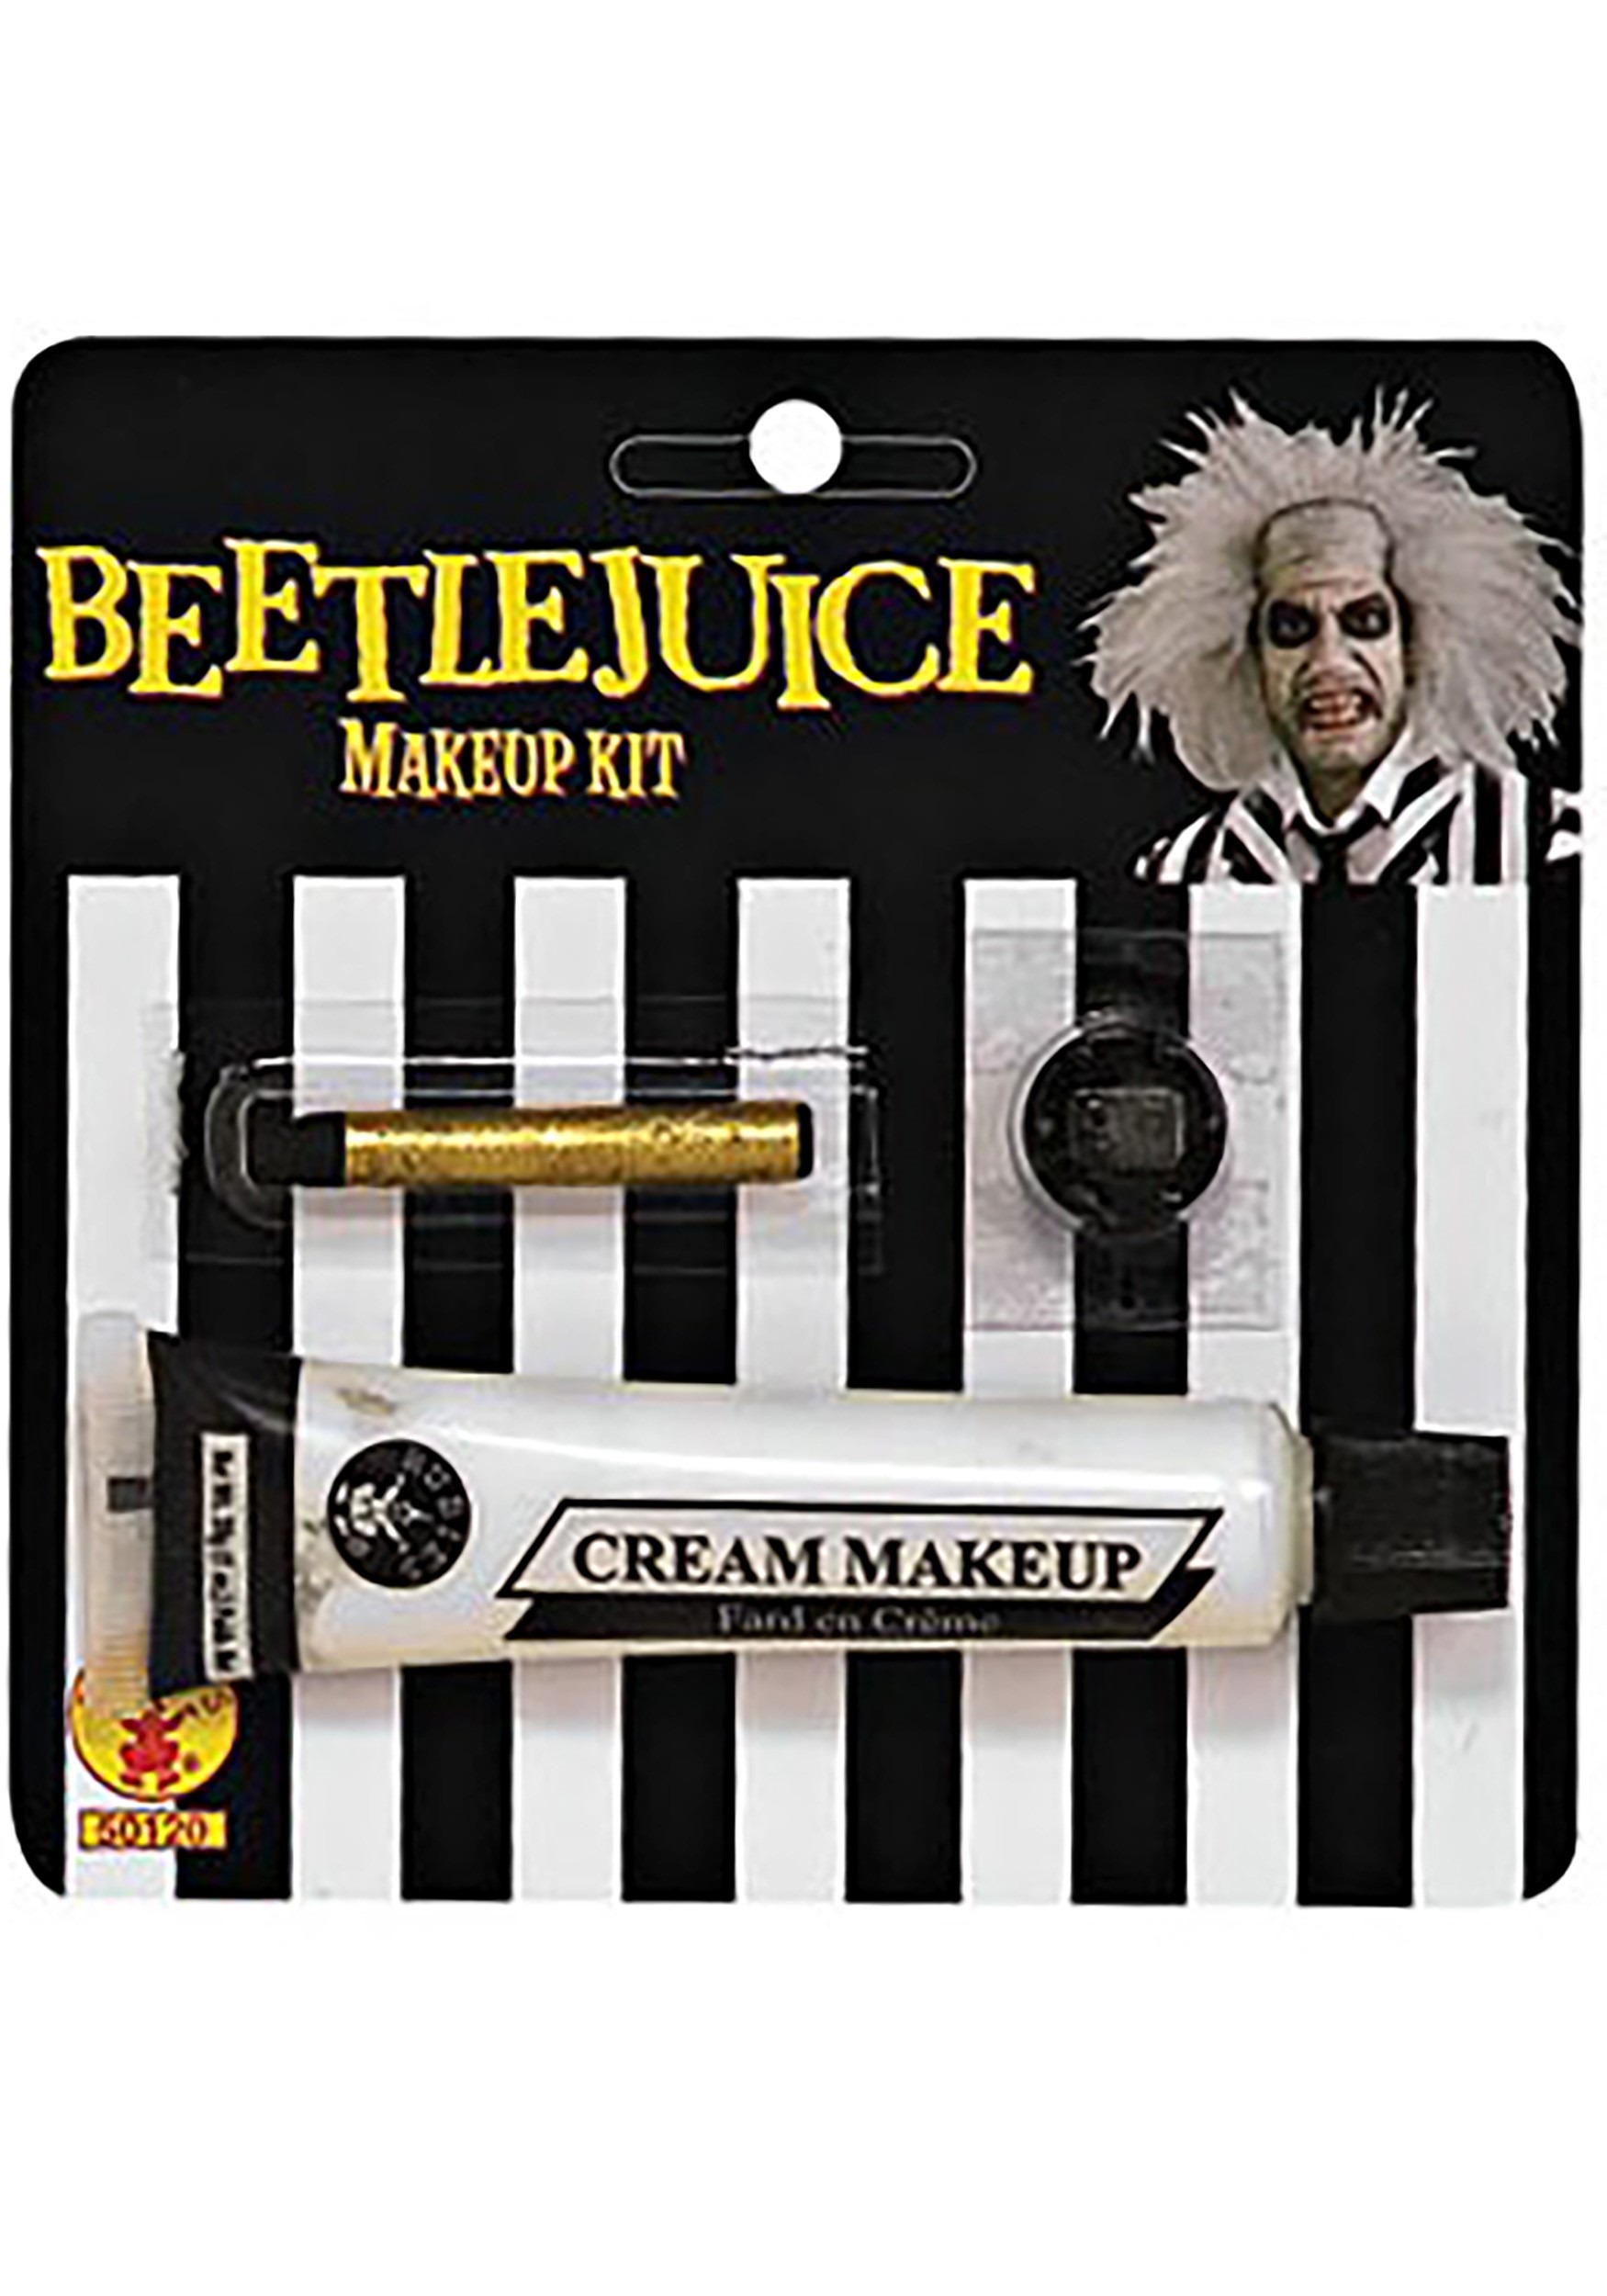 Kit de maquillaje de beetlejuice Multicolor